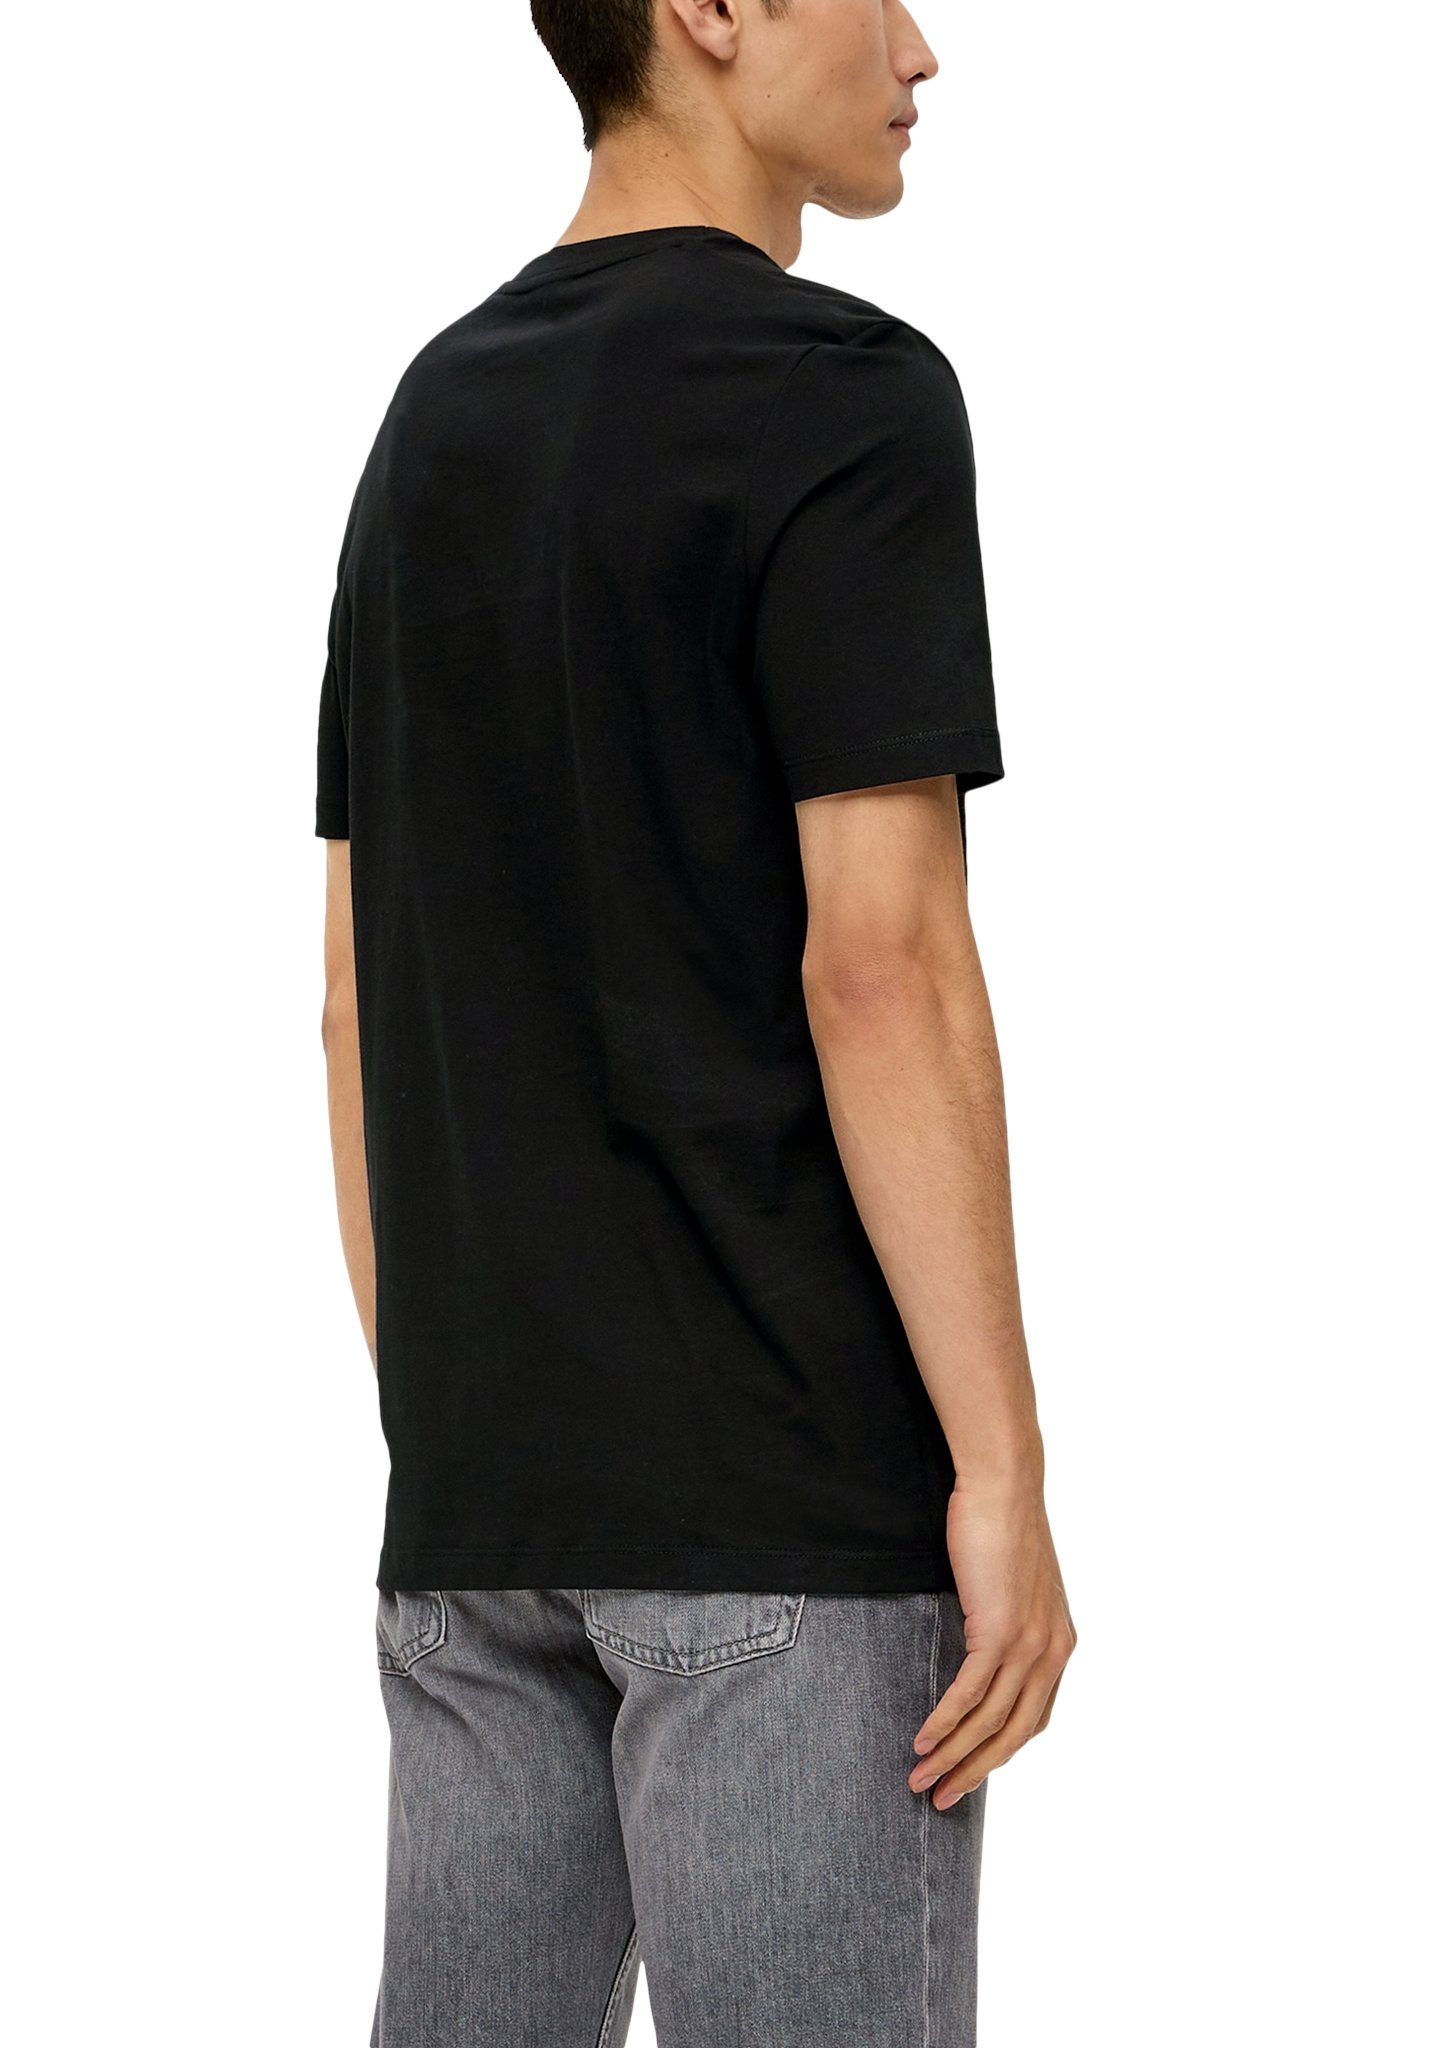 s.Oliver T-Shirt black auf Schriftzug mit der Brust